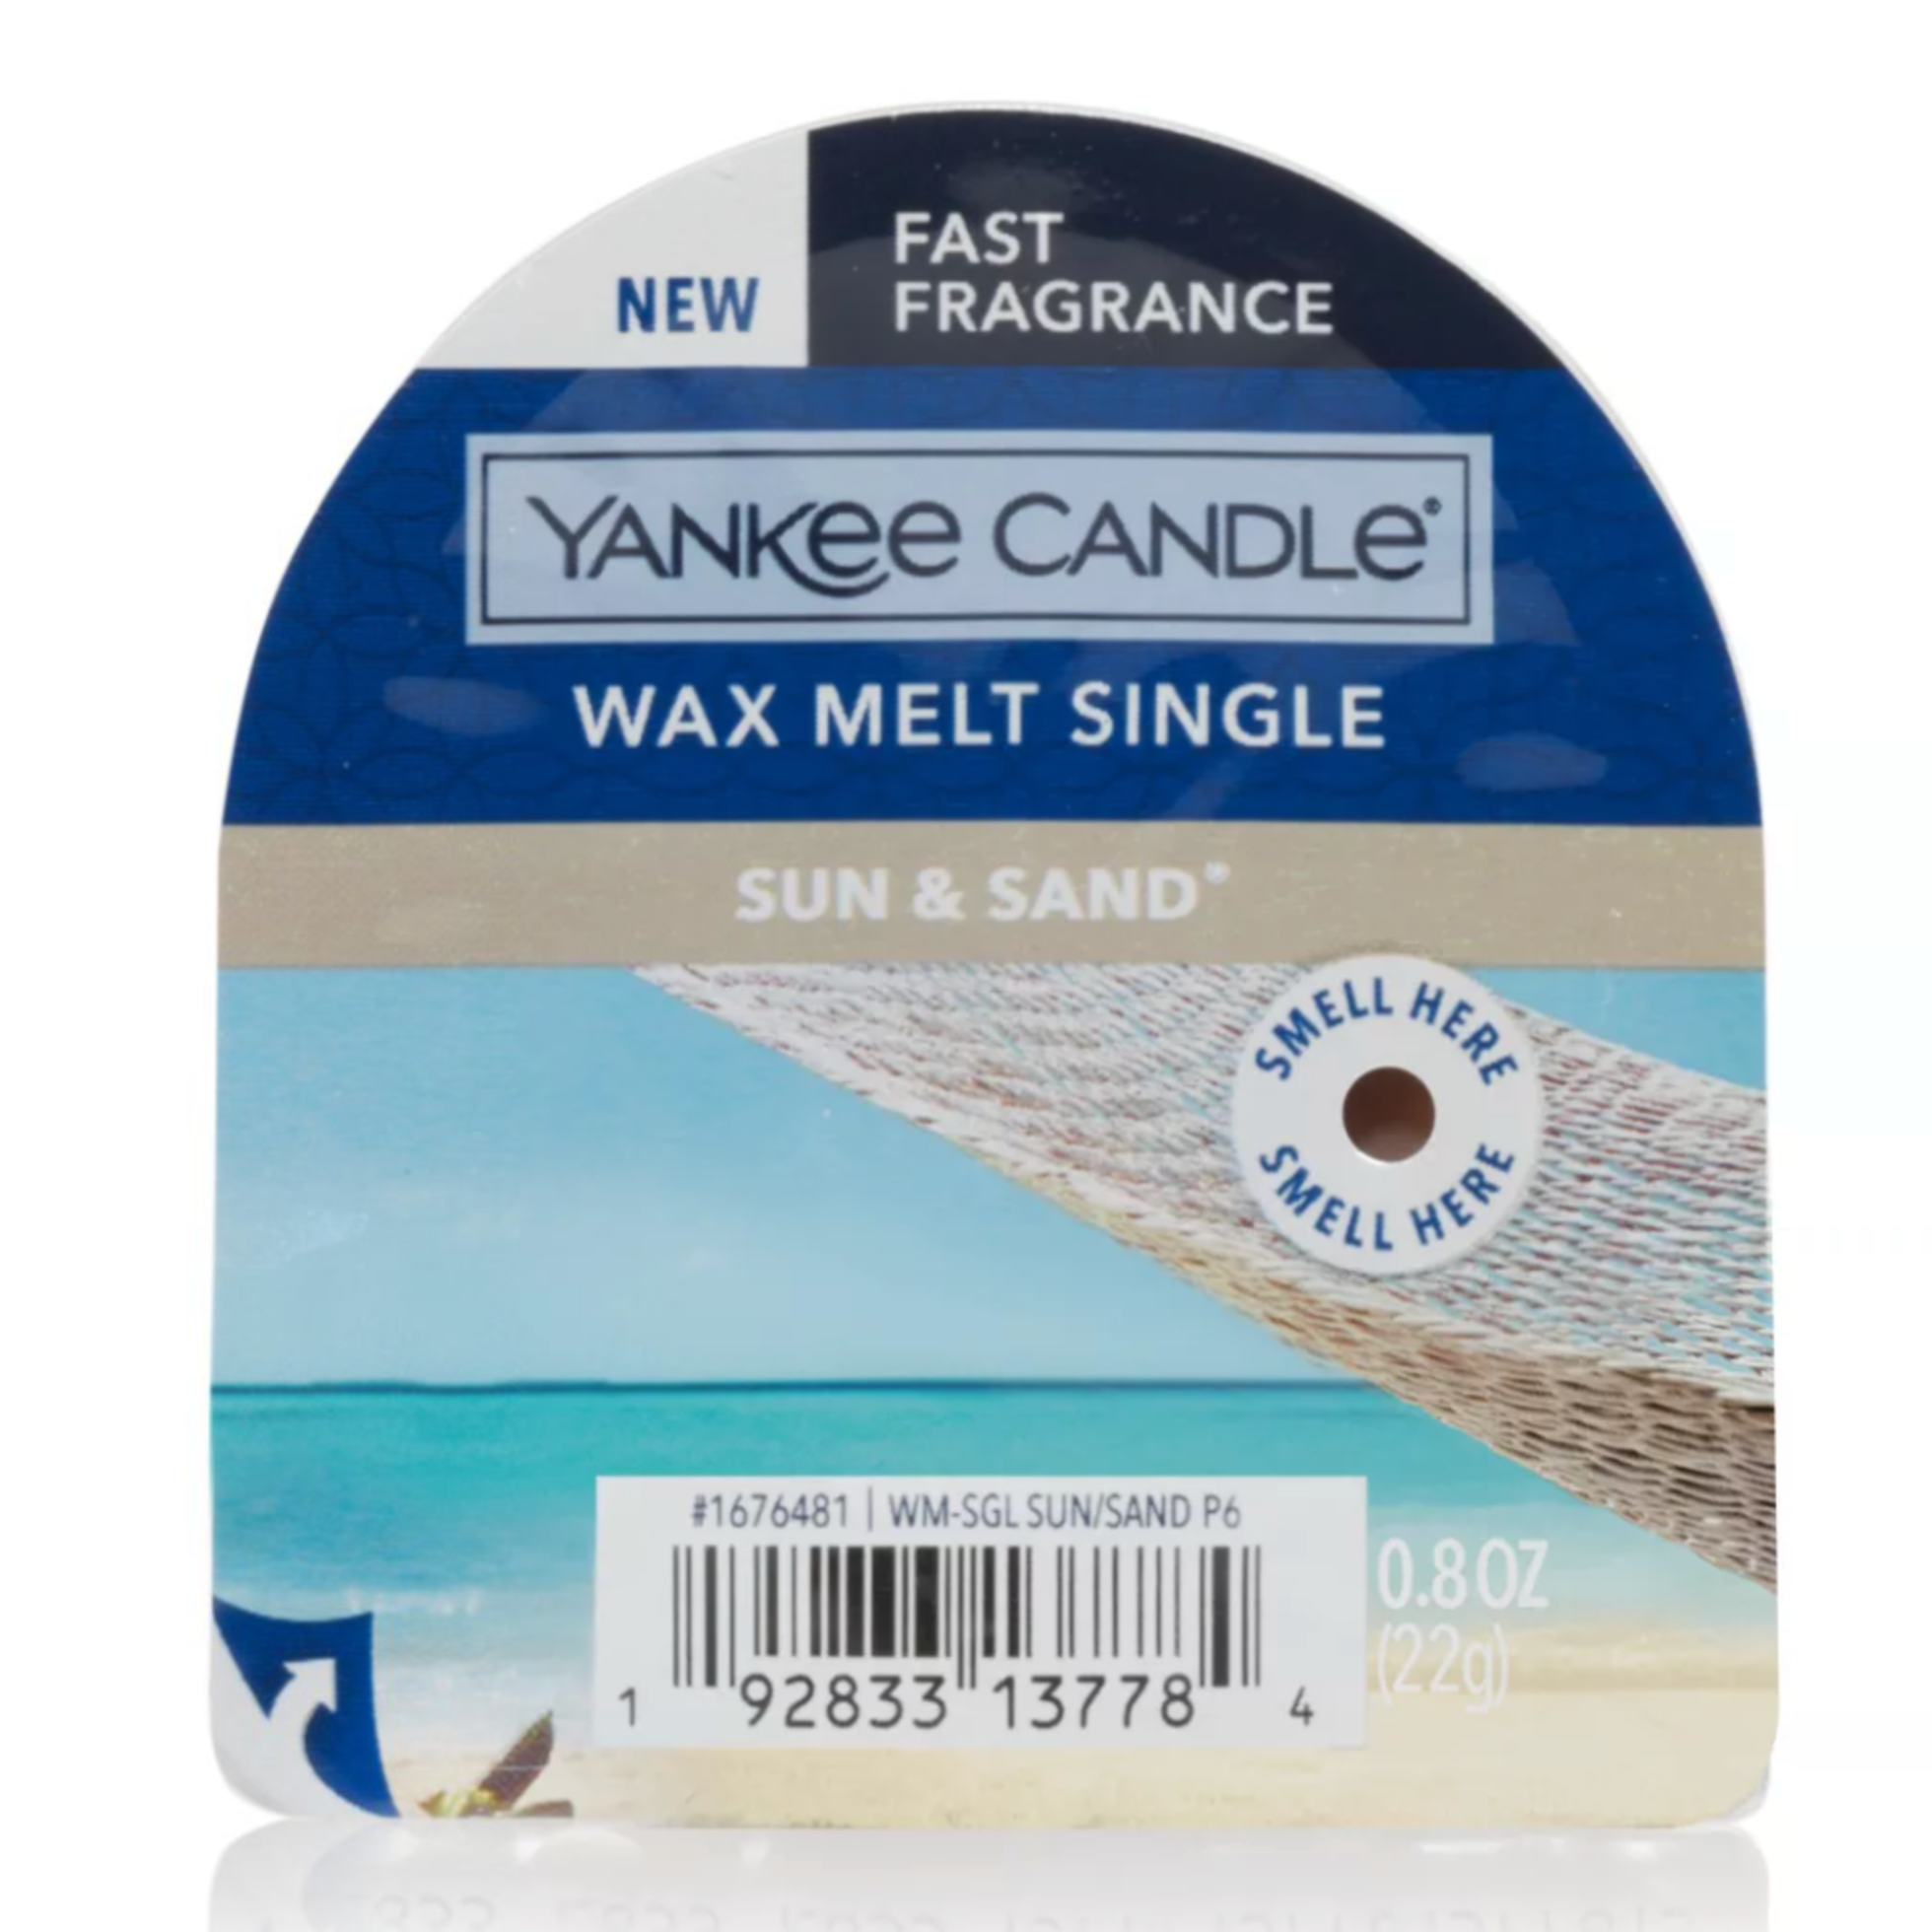 Sun & Sand Wax Melt Single